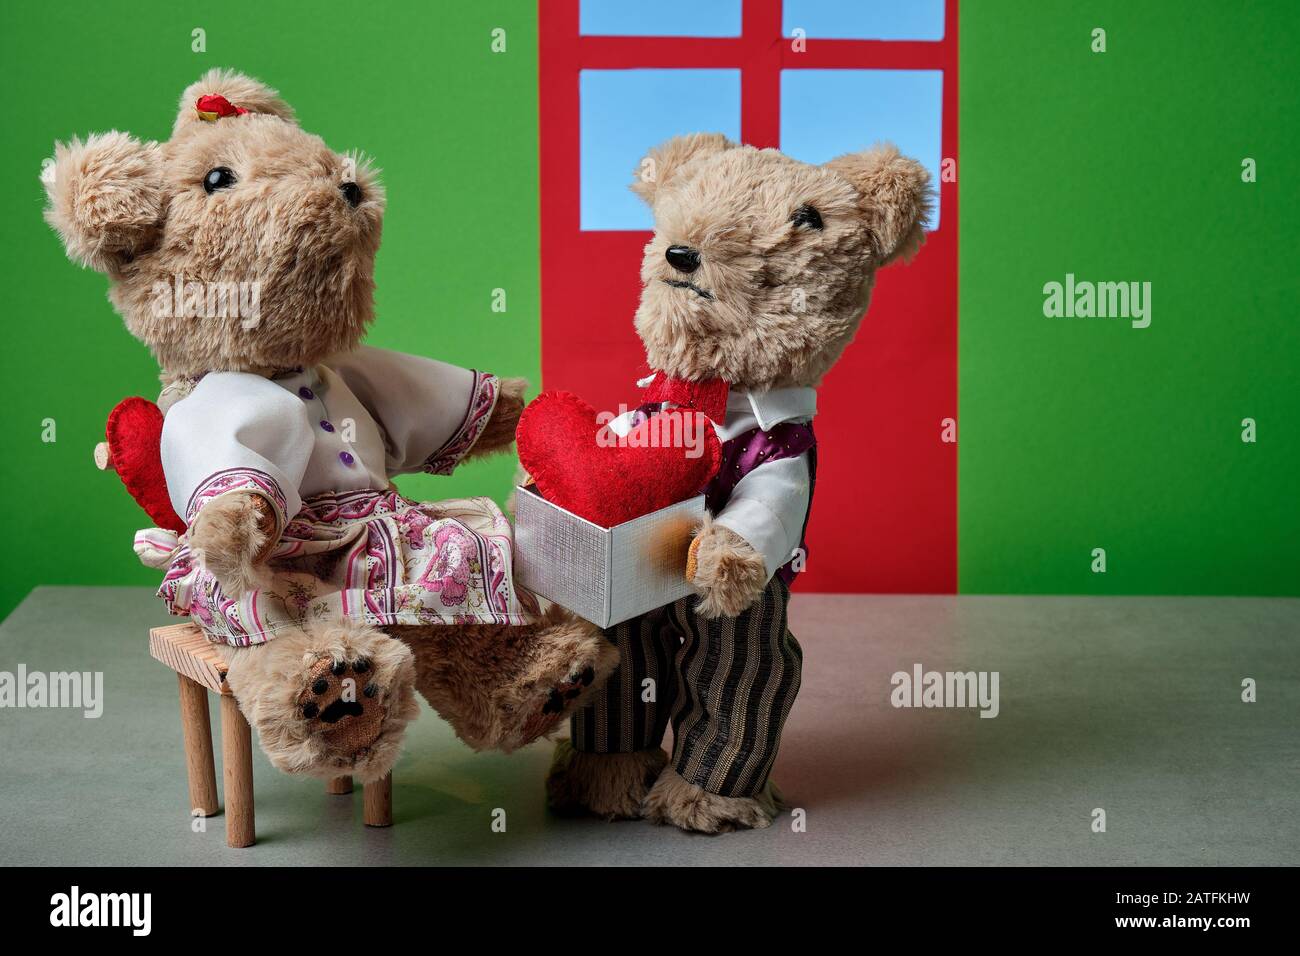 un paio di orsacchiotti che celebrano il giorno dei san valentino Foto Stock